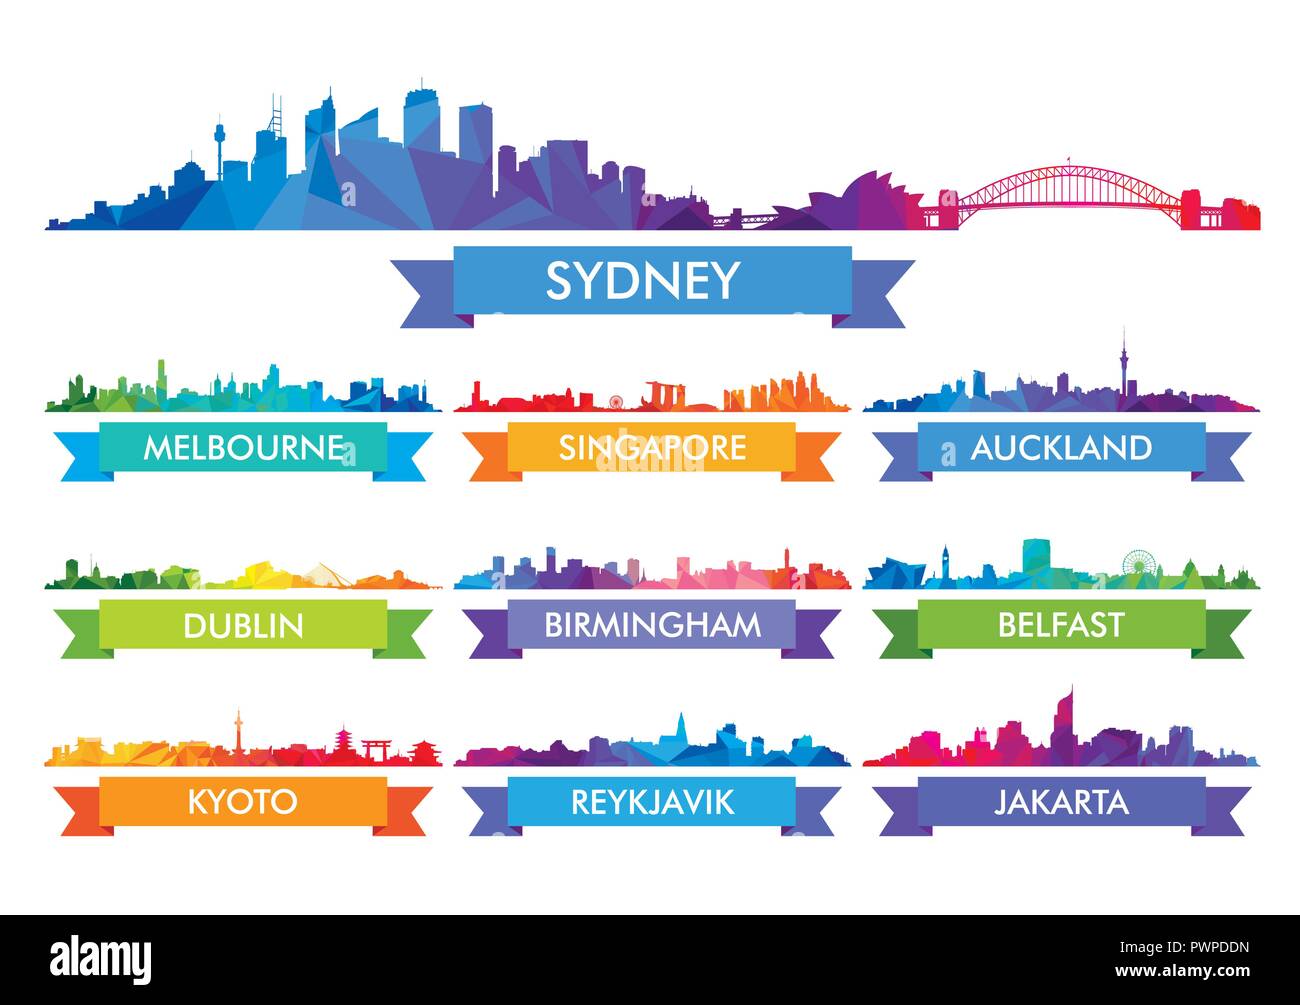 L'Australie et les toits colorés сity l'île grande série de silhouettes vecteur ville Illustration de Vecteur